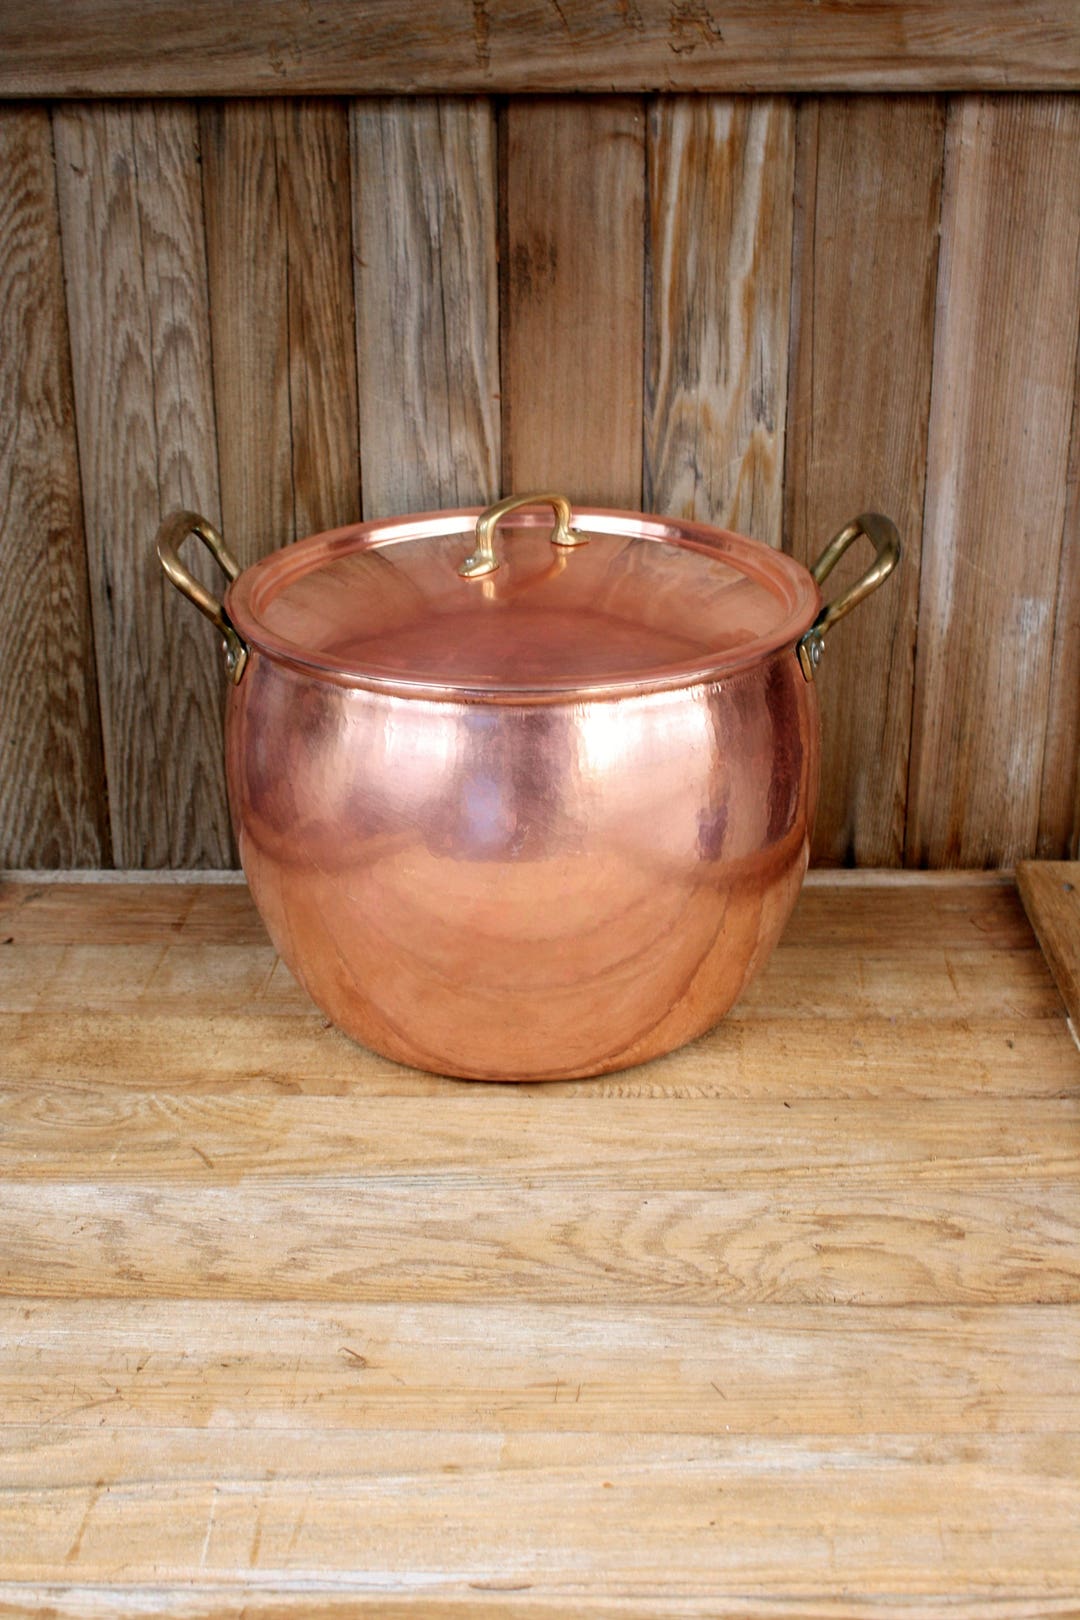 Medium Copper Stock Pot - 3 Quart